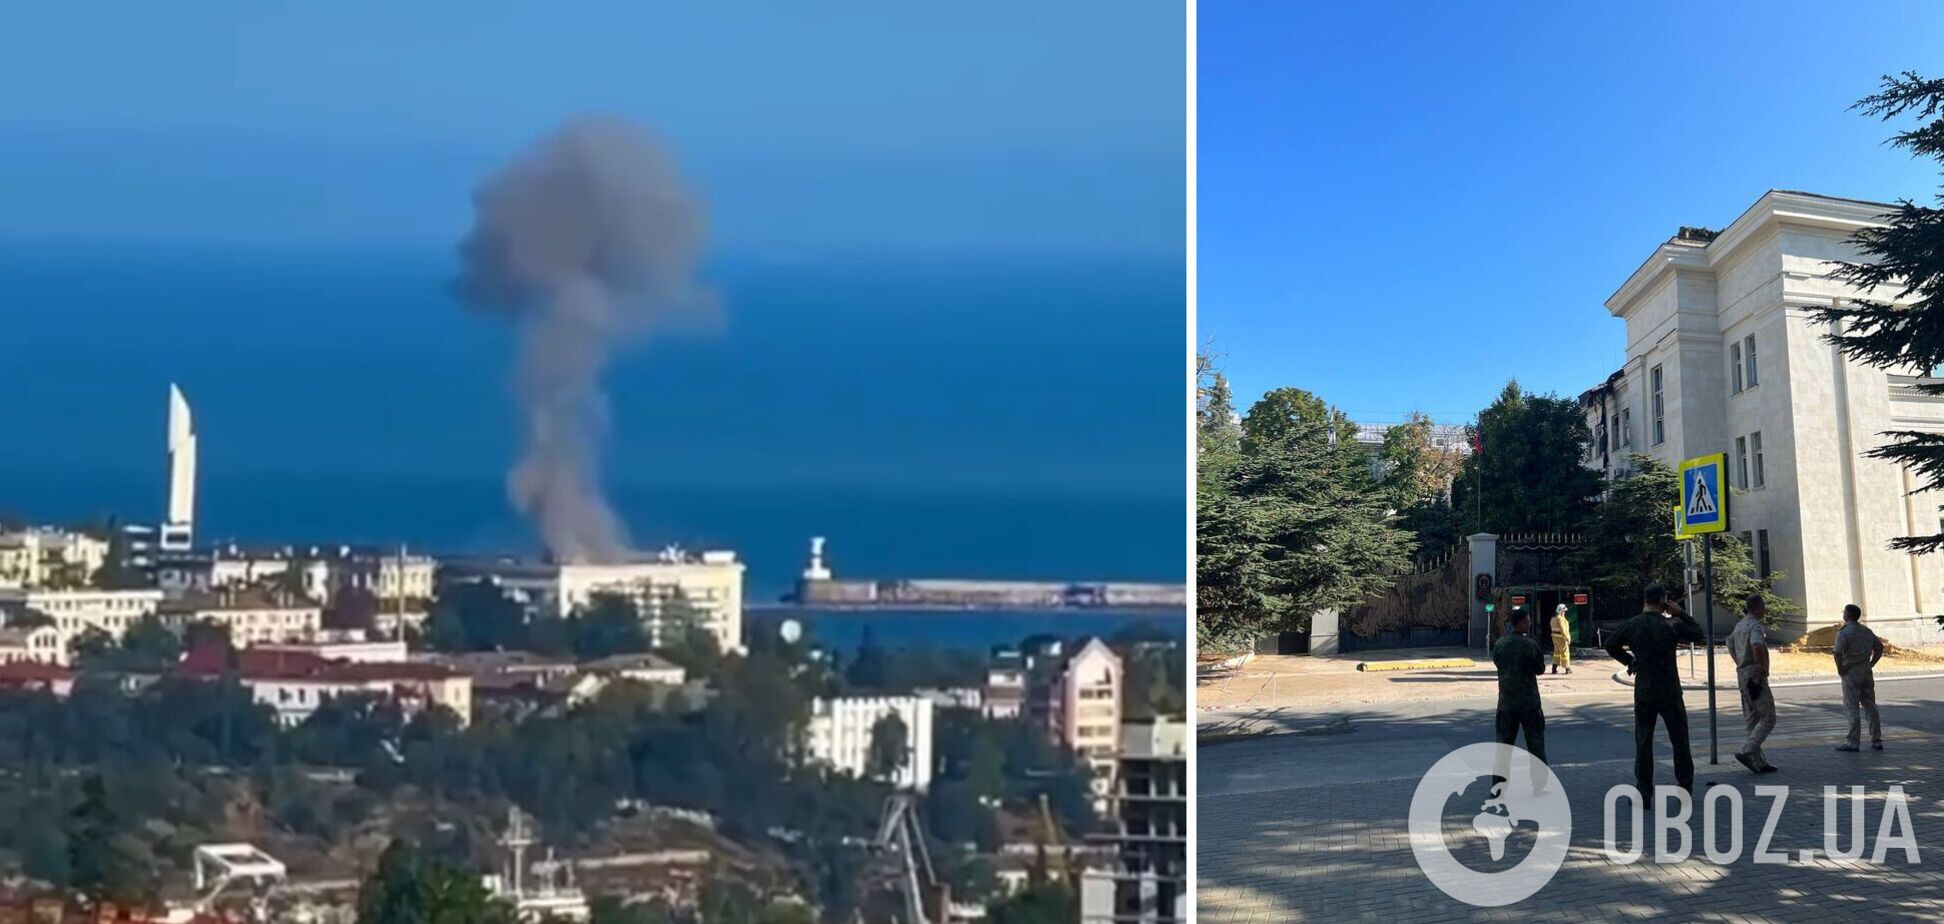 Штаб Черноморского флота РФ в Севастополе атаковал беспилотник: здание оцепила 'полиция'. Фото и видео